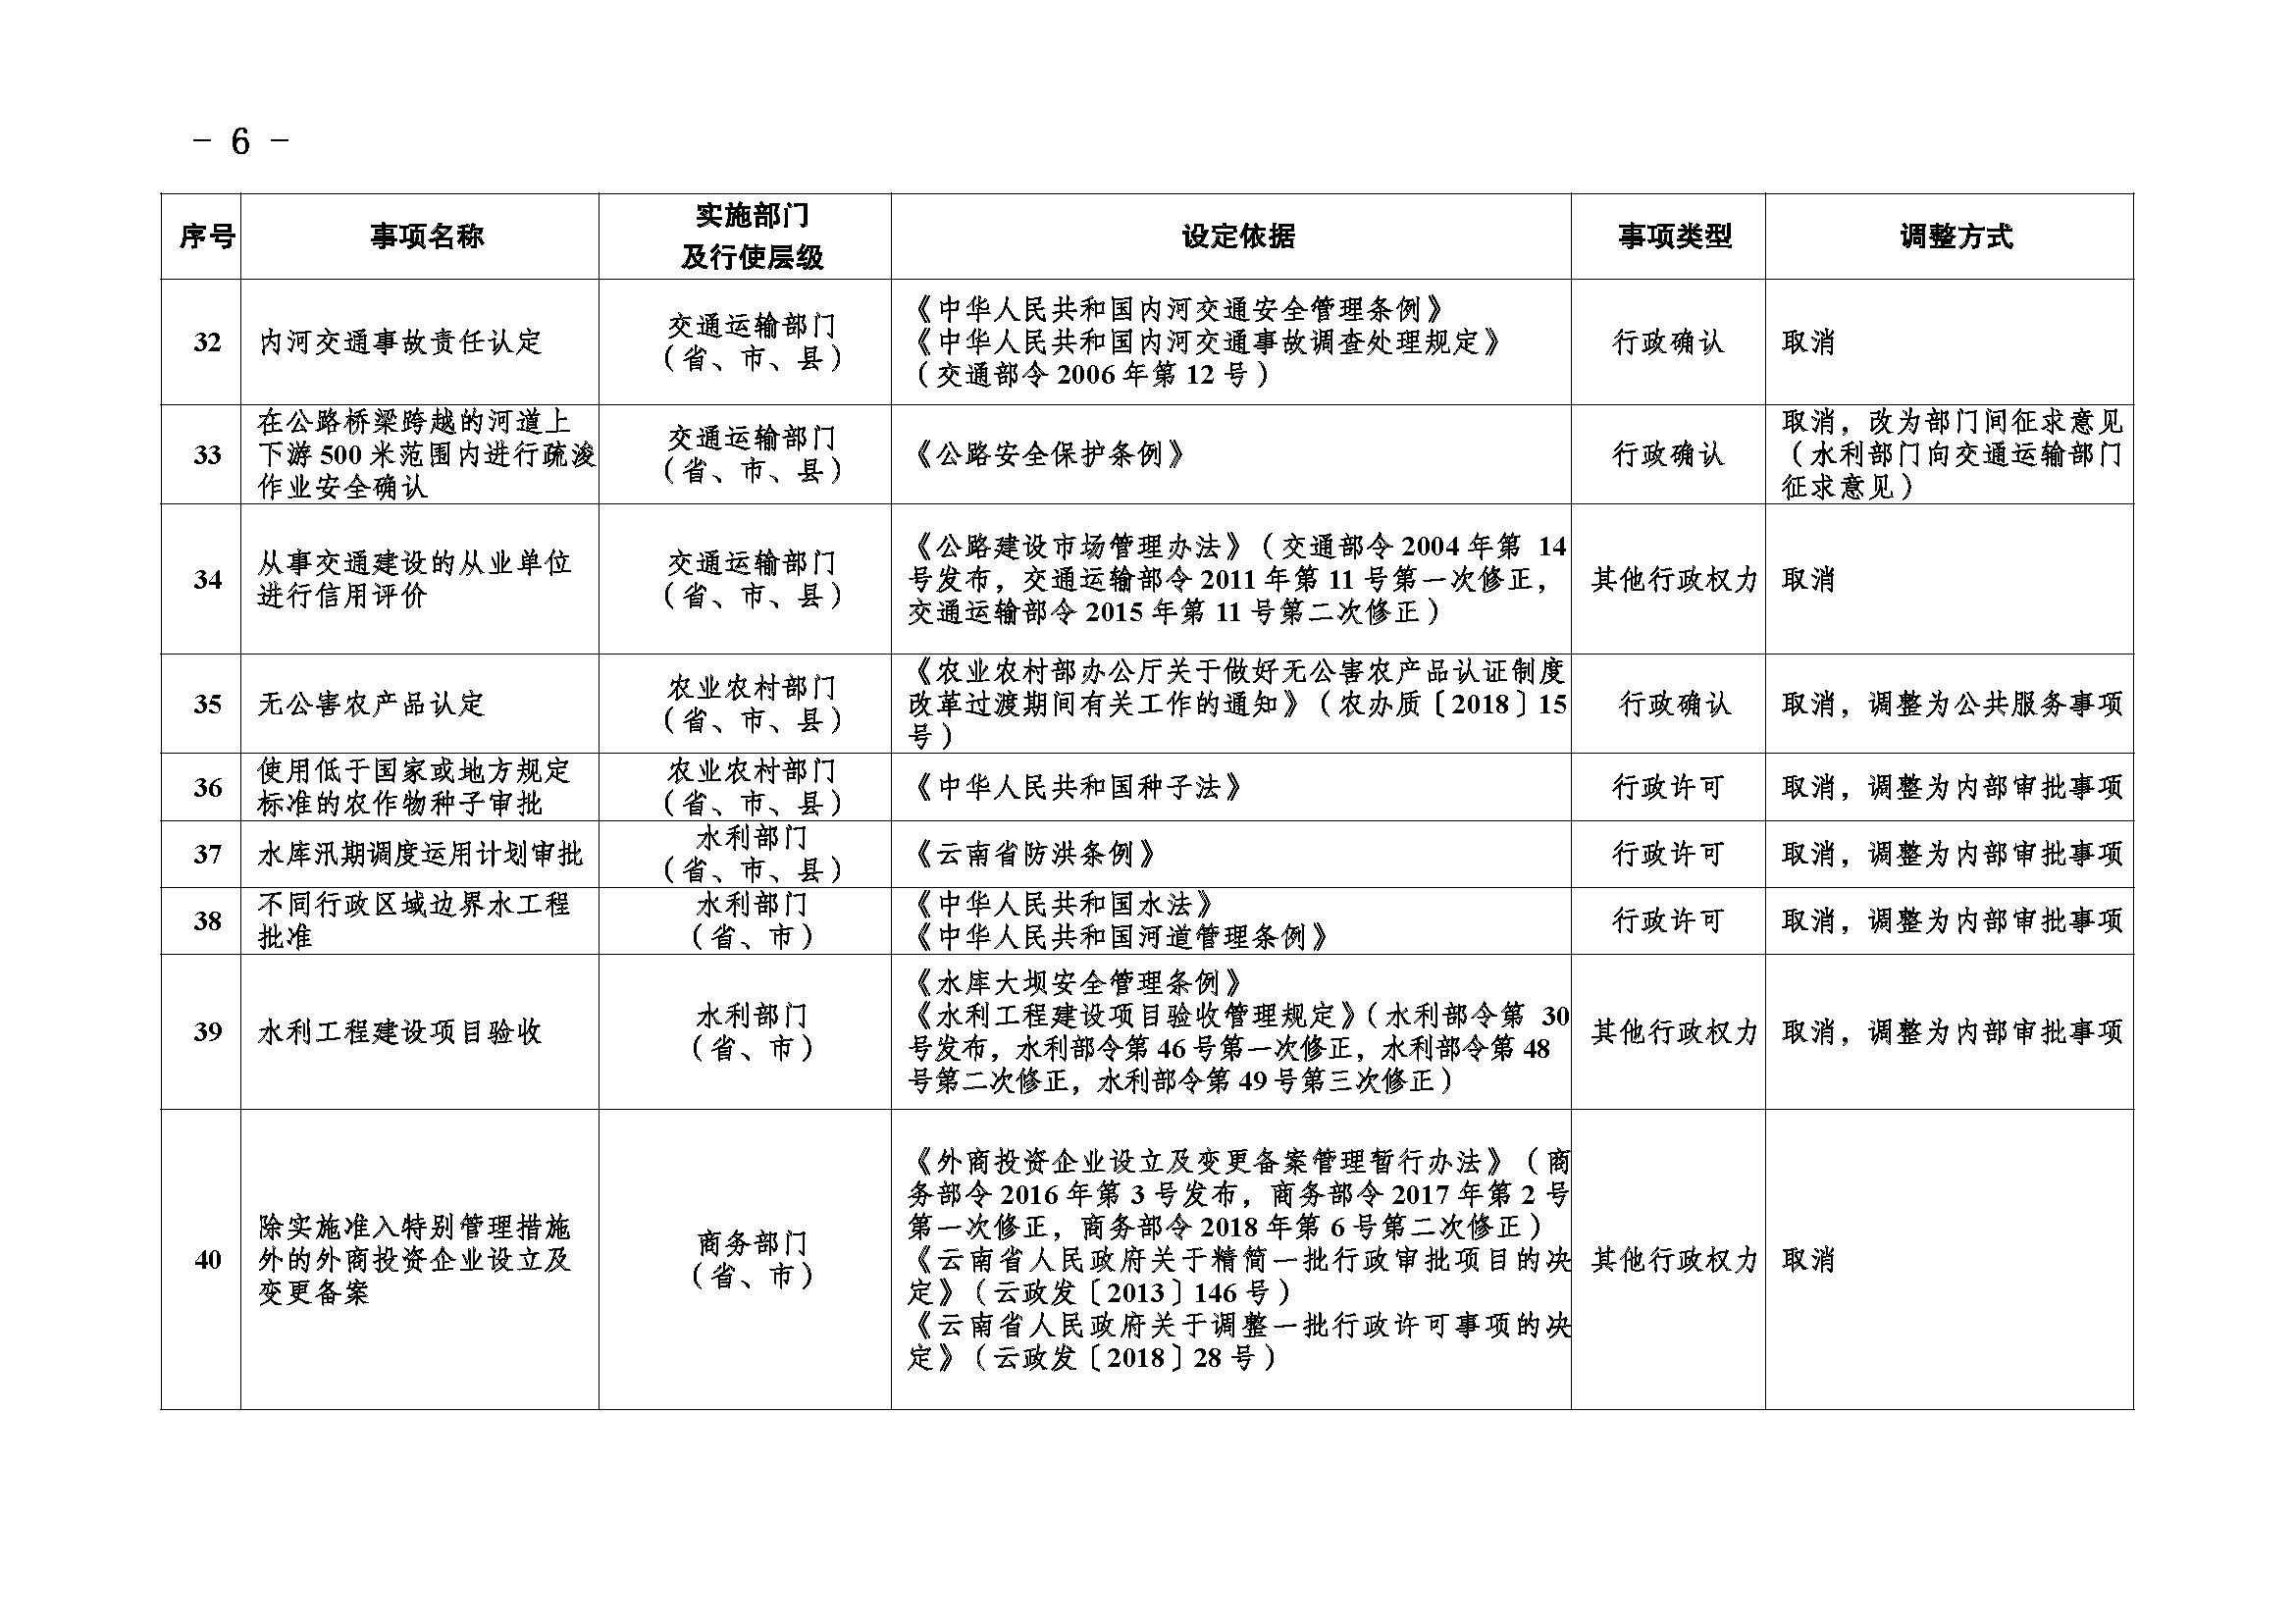 临沧市人民政府办公室关于做好调整370项行政权力事项工作的通知_页面_06